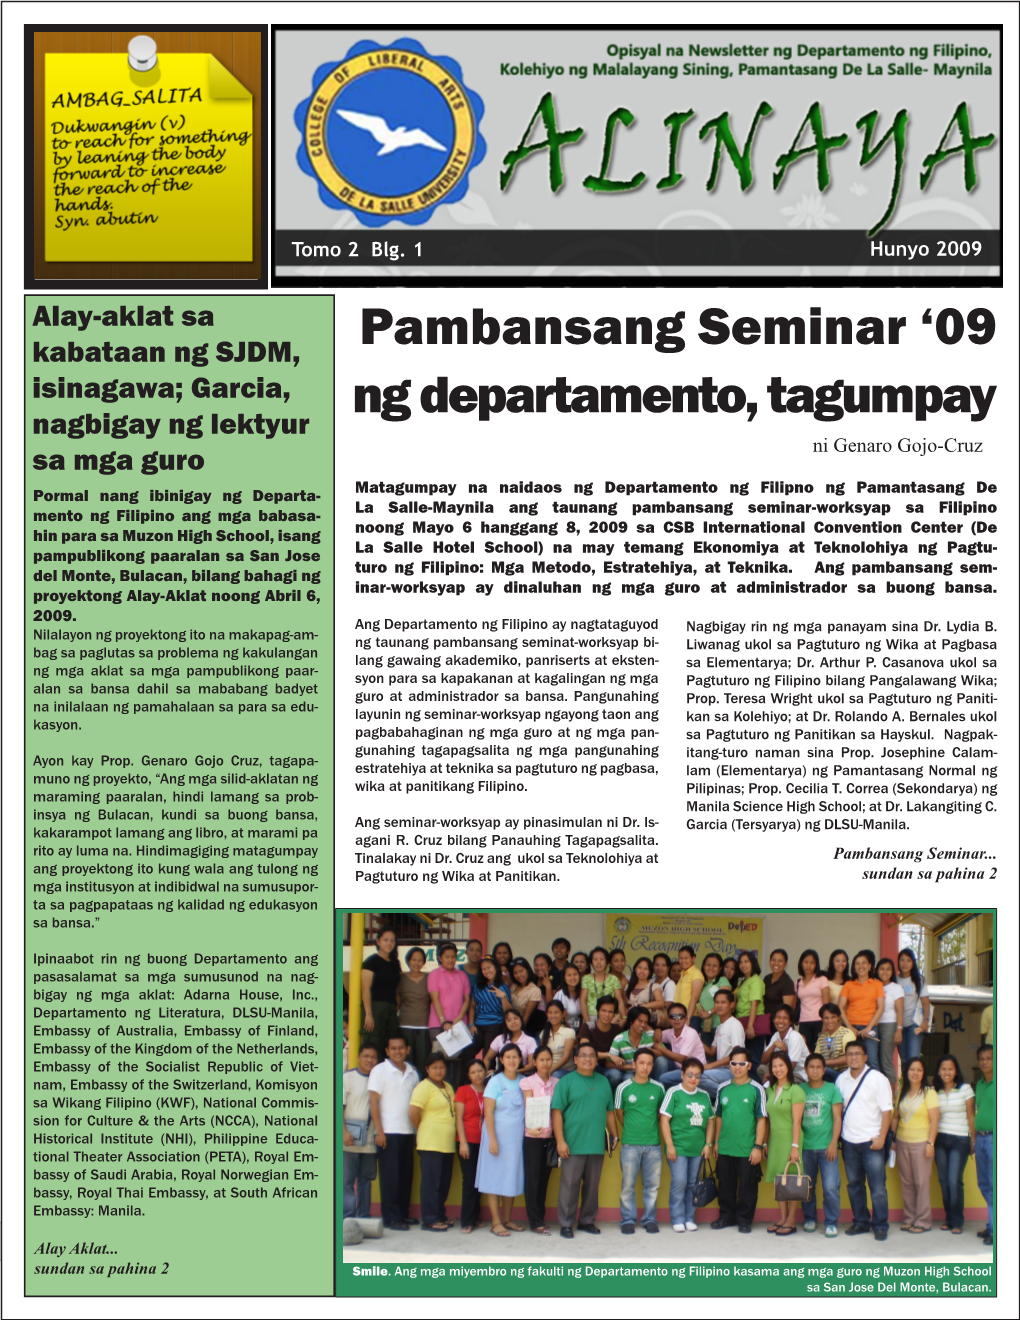 Pambansang Seminar '09 Ng Departamento, Tagumpay